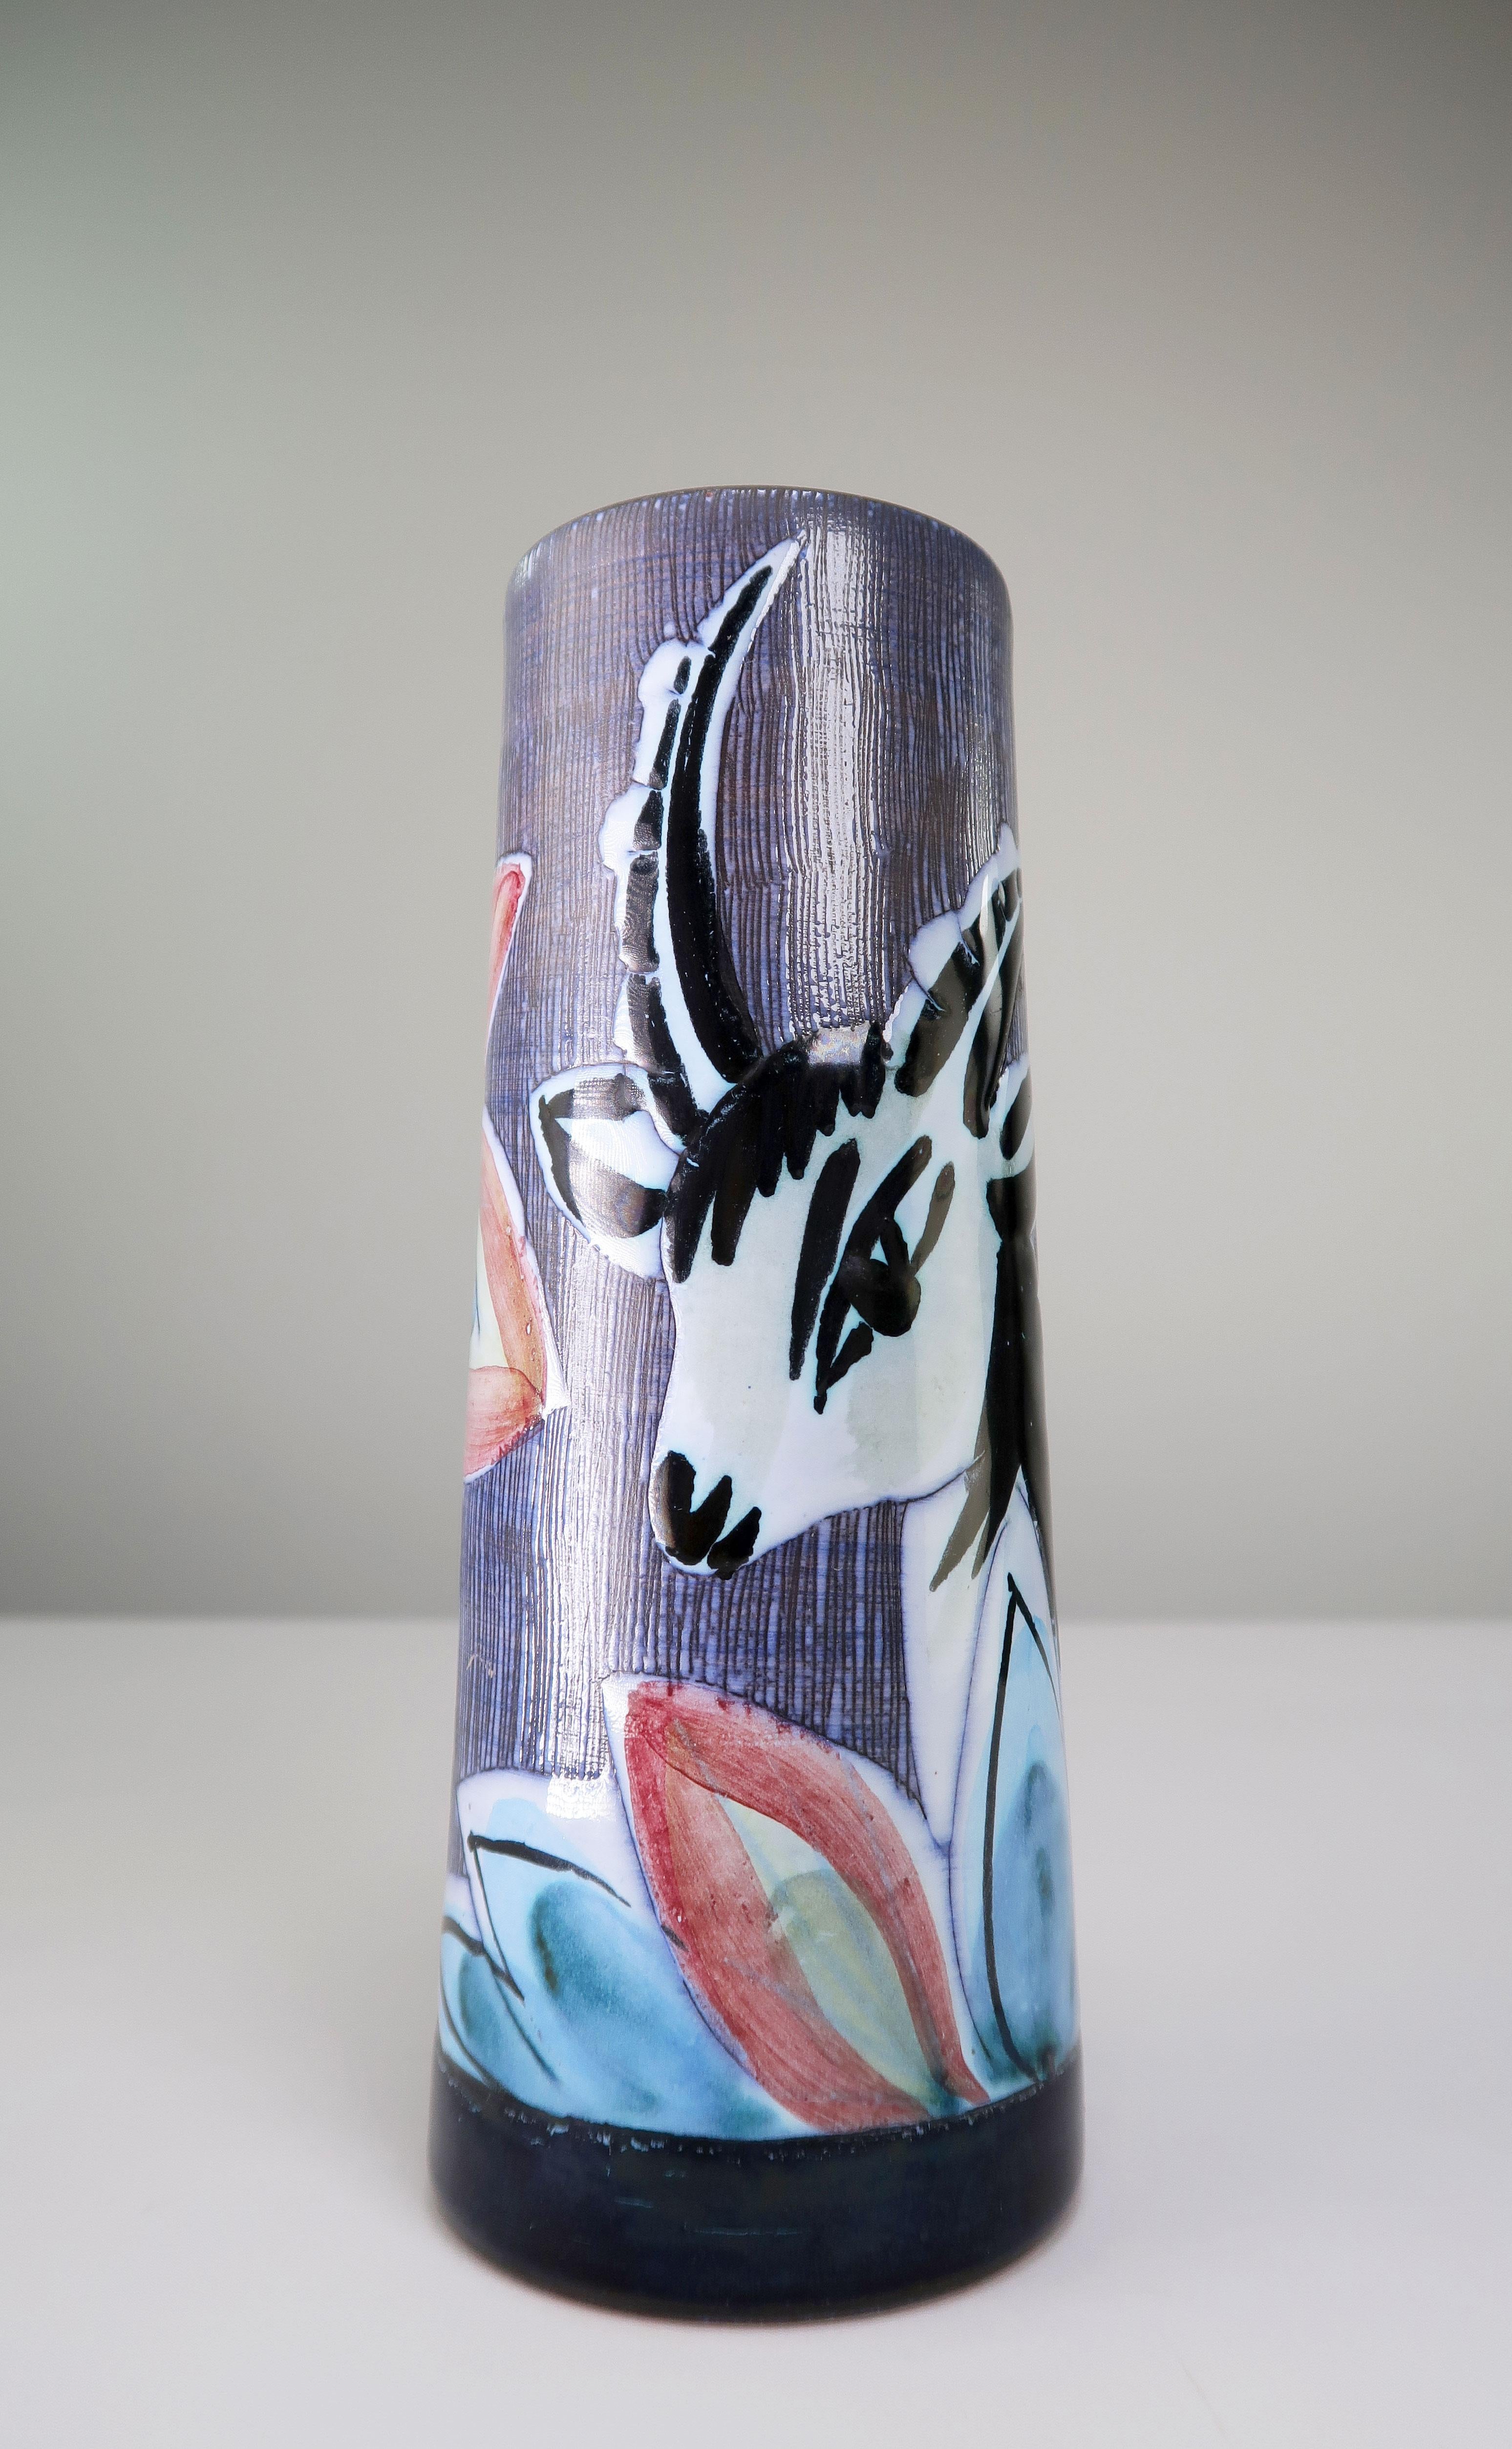 Vase cylindrique suédois moderne du milieu du siècle, peint à la main, représentant la tête d'une gazelle noire et blanche dans des fleurs sauvages aux couleurs bleu, rose, vert et jaune. Technique du sgraffite sur le fond de l'image. Glaçure